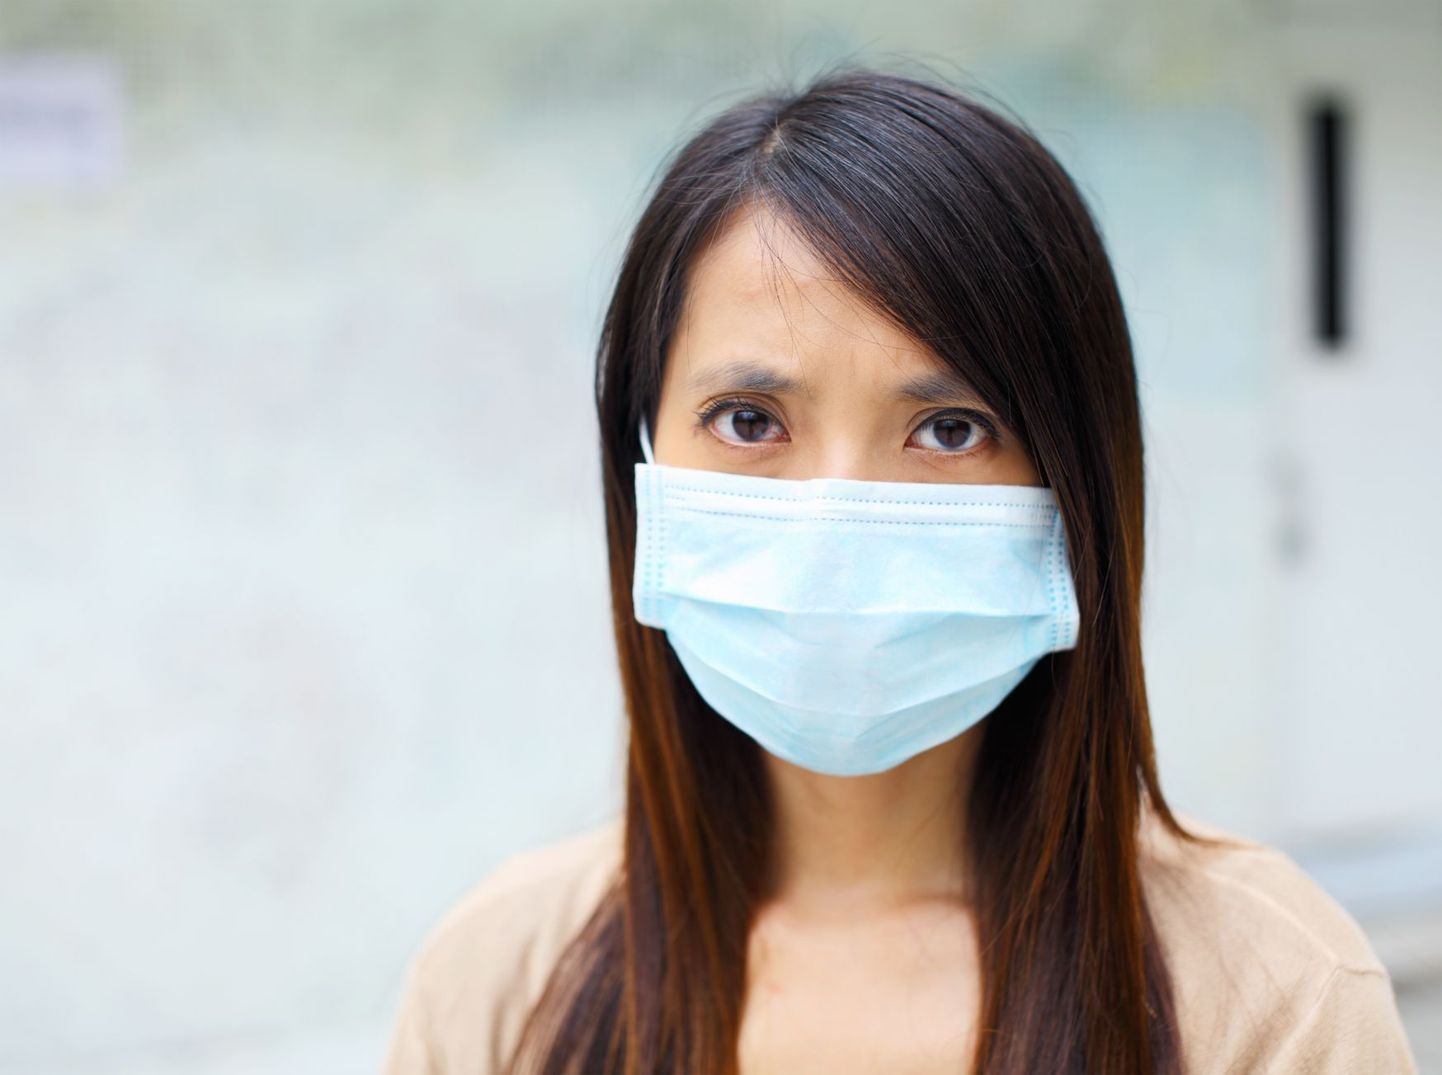 Gripi hooajal kantakse maski mitte hirmust haigeks jääda, vaid siirast soovist teisi oma nakkuse eest kaitsta.